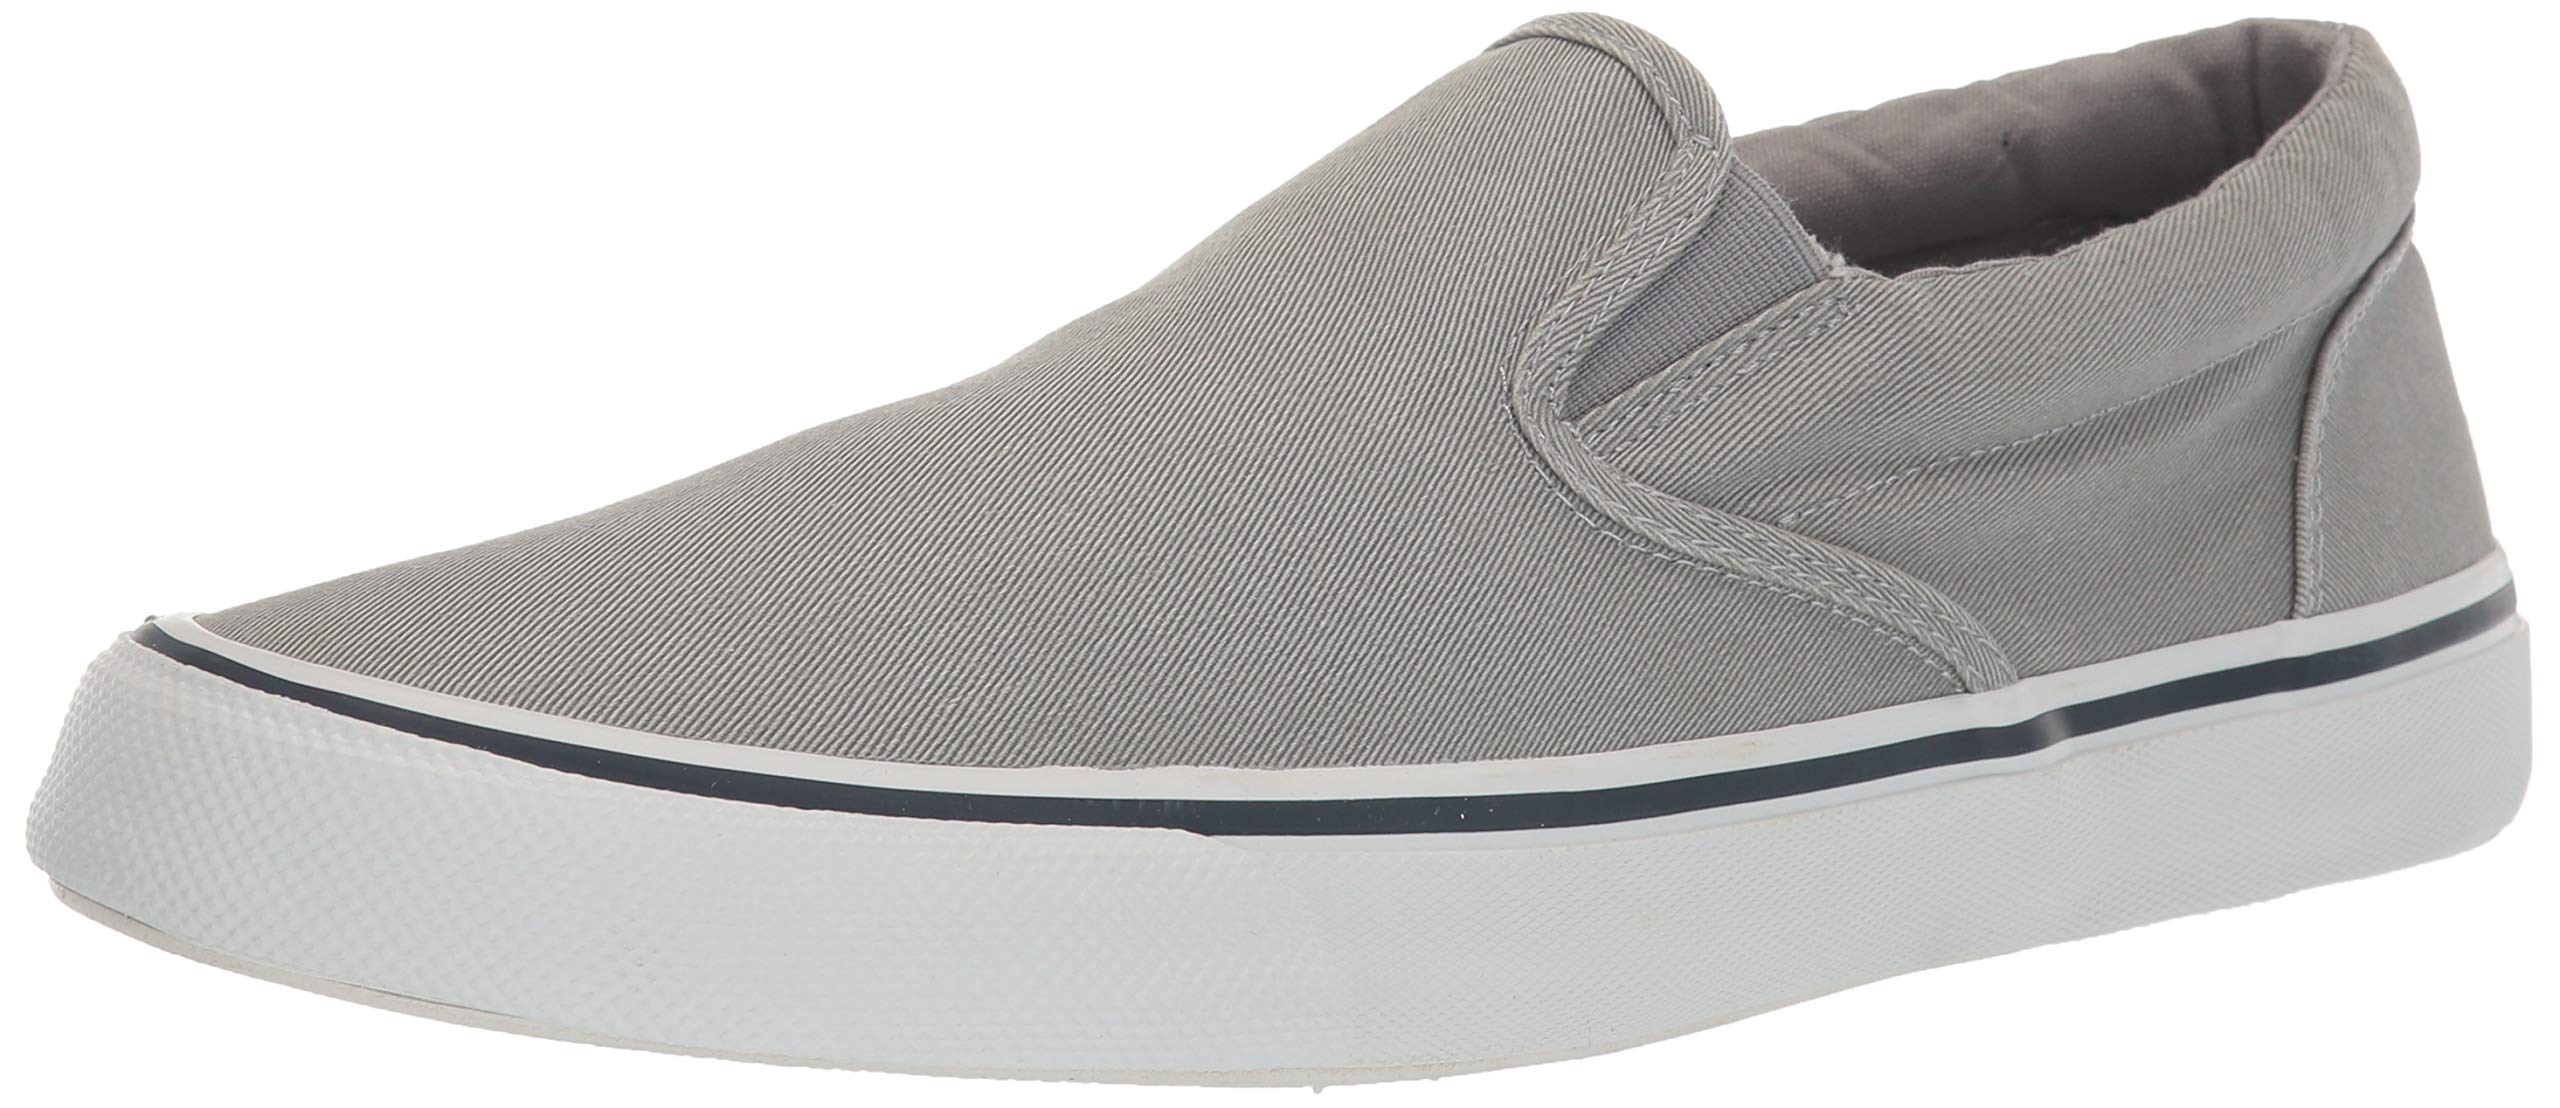 Sperry Mens Striper II Slip On Sneaker - SW Grey - Size 11.5